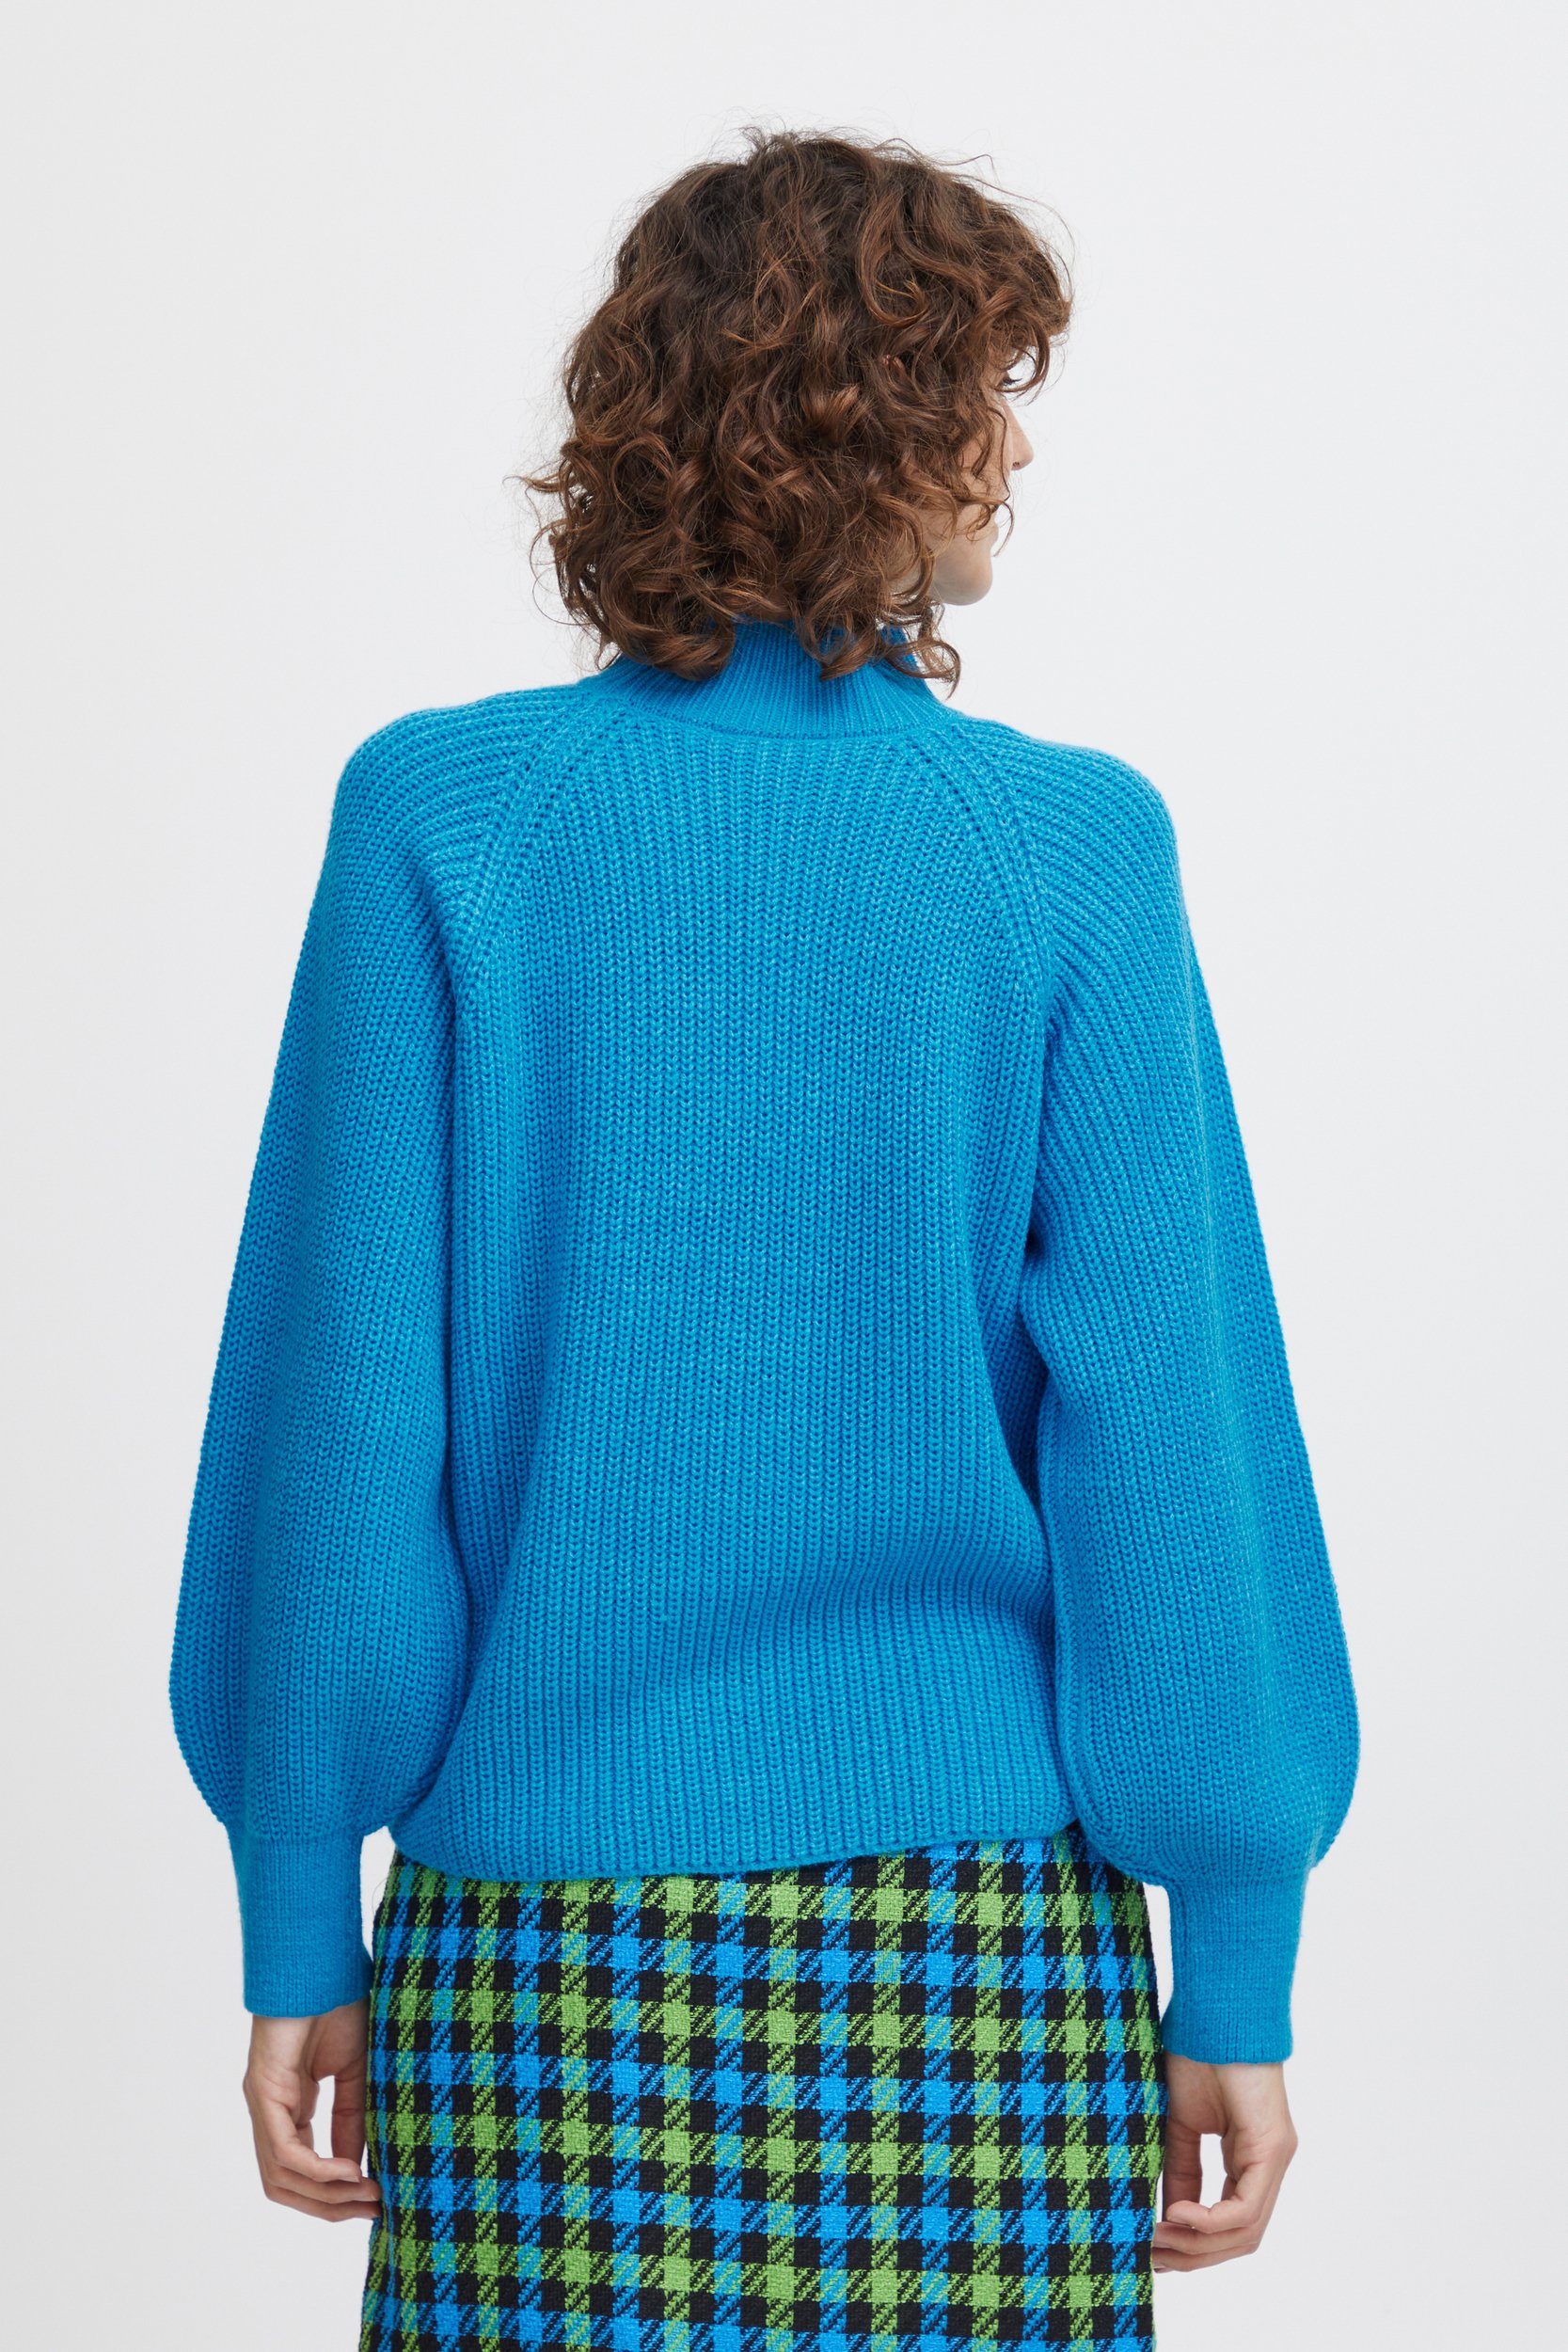 Strickpullover mit mit Pullover 6692 b.young Blau Sweater Ballonärmeln Kragen in Grobstrick